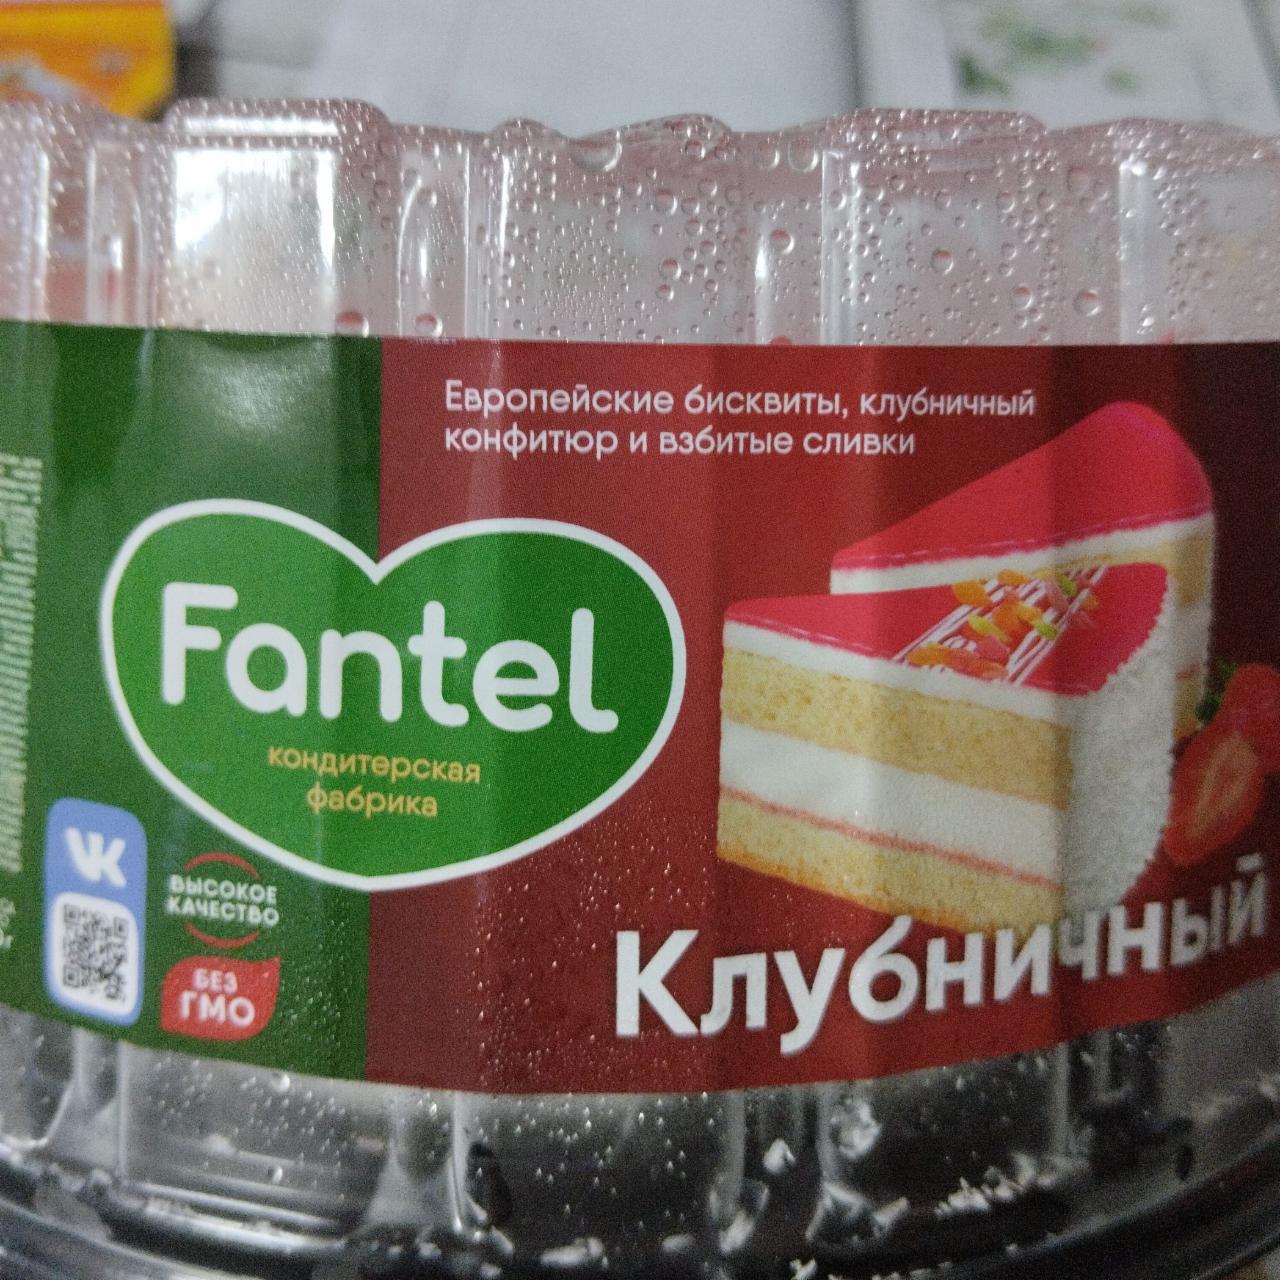 Фото - торт клубничный Fantel